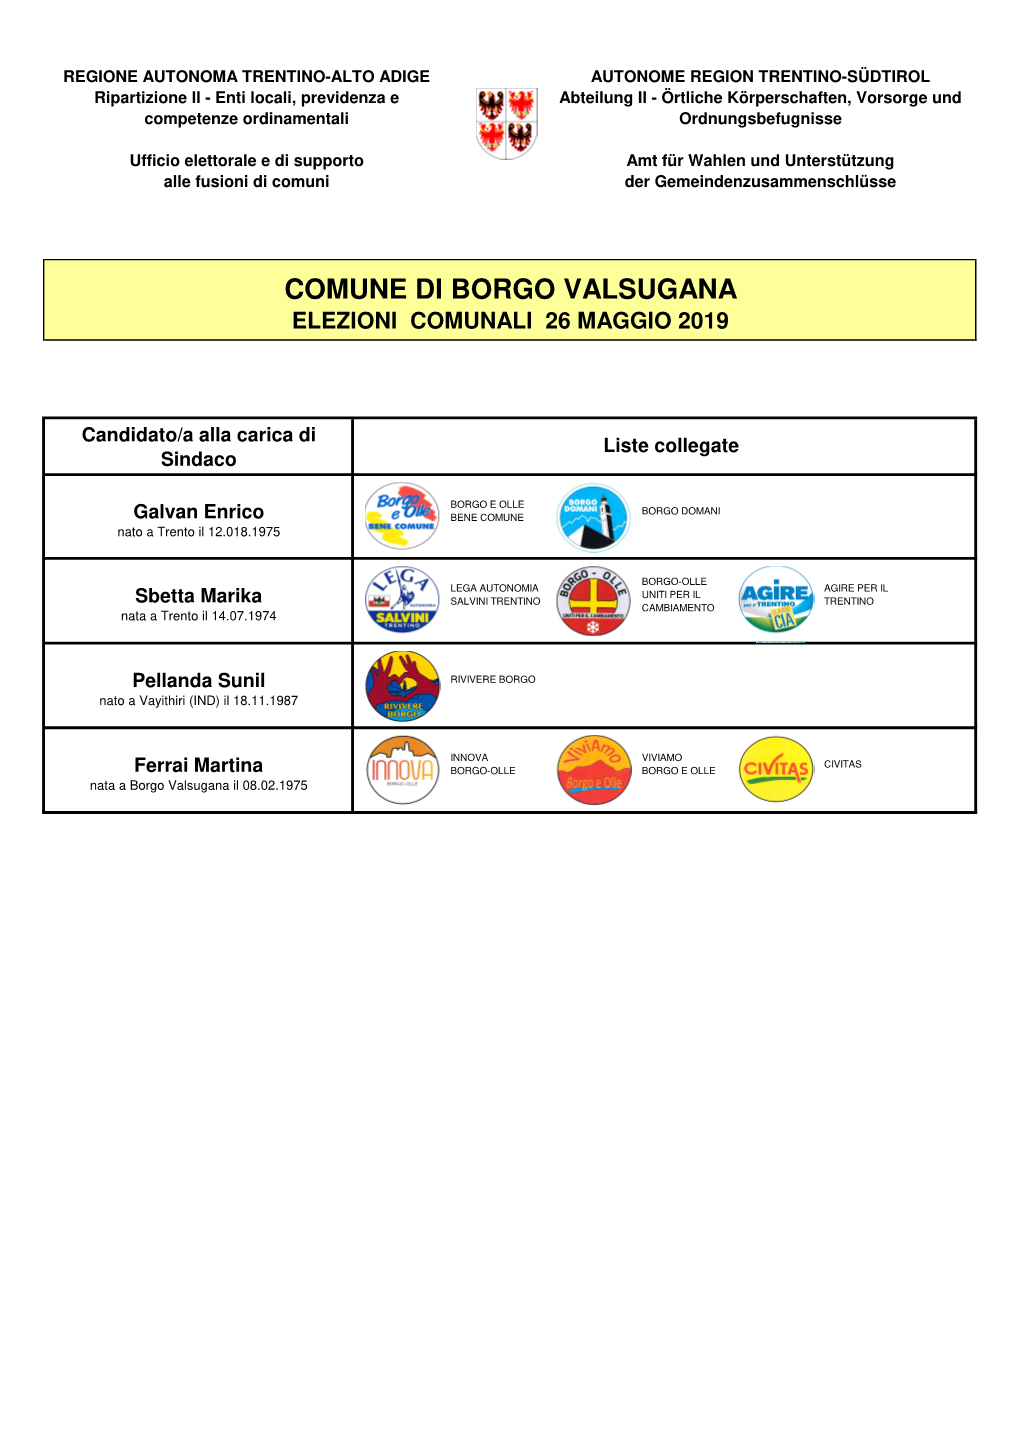 Borgo Valsugana Elezioni Comunali 26 Maggio 2019